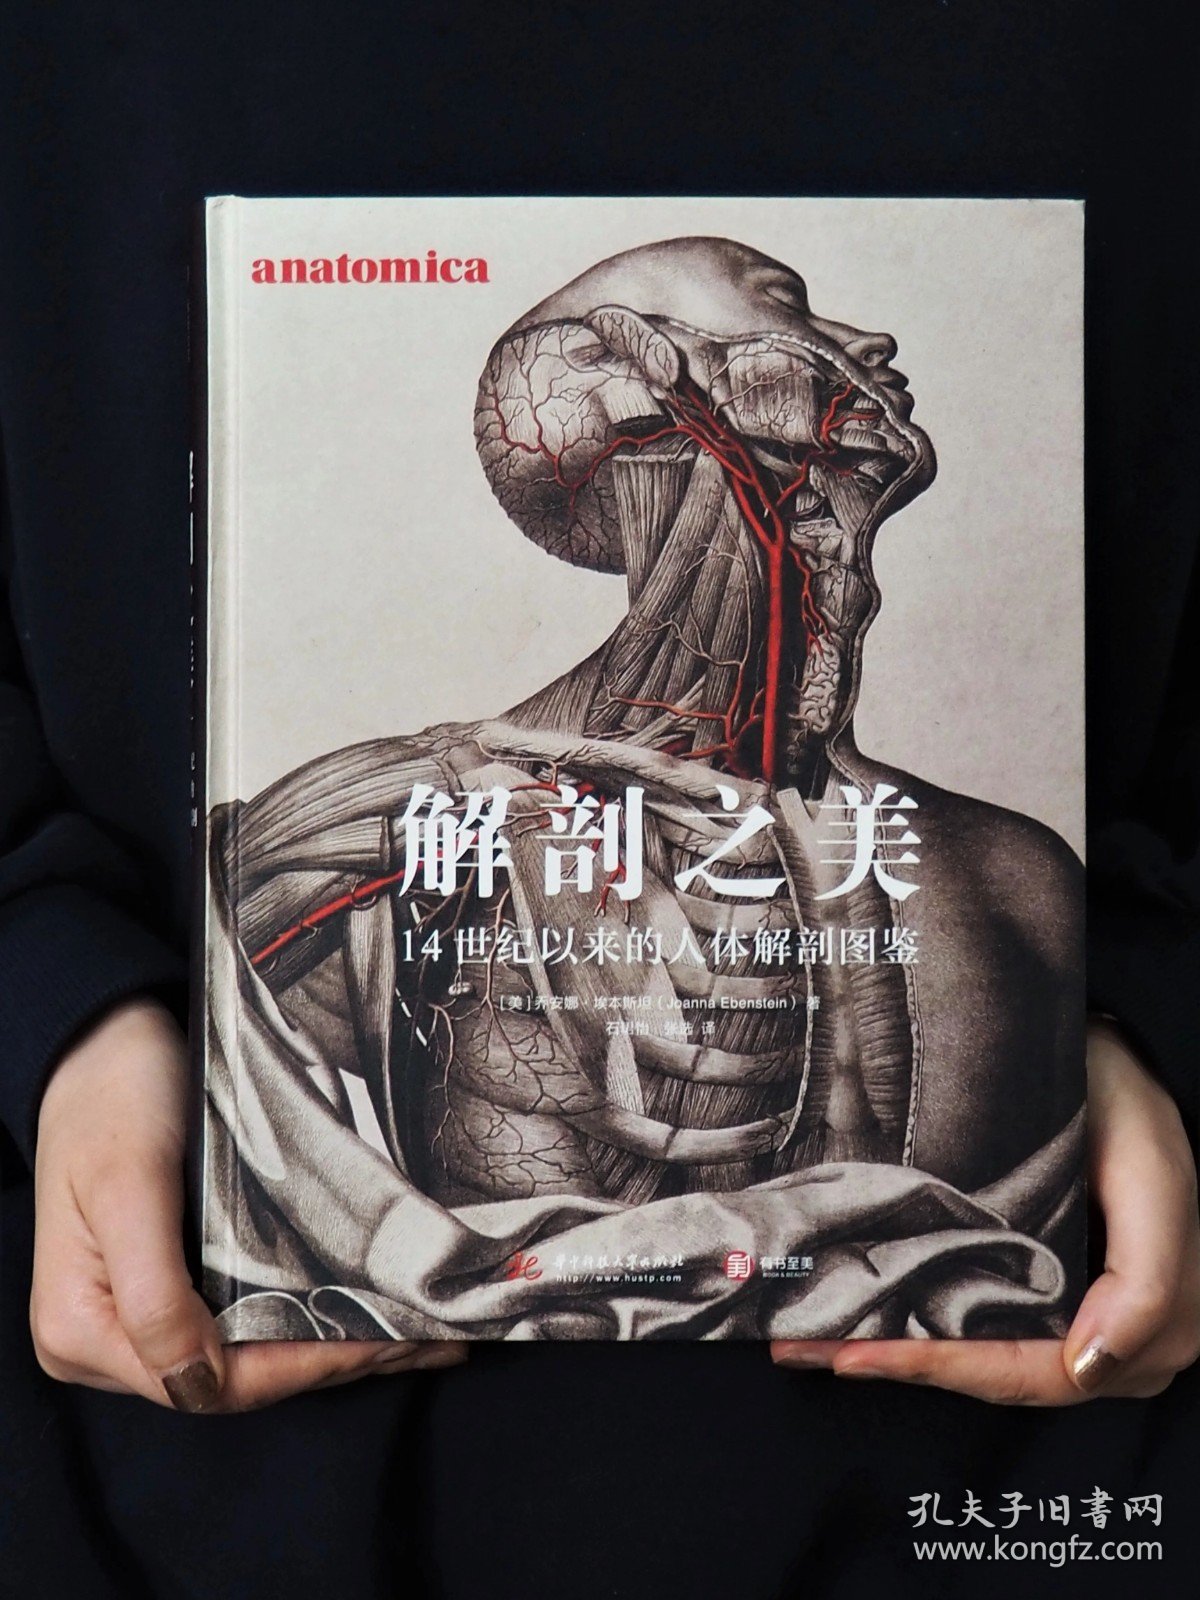 2022年新书 解剖之美：14世纪以来的人体解剖图鉴 250幅人体解剖彩绘病态美学爱好者收藏美术绘画骨骼肌肉全身书籍艺术与医学历史